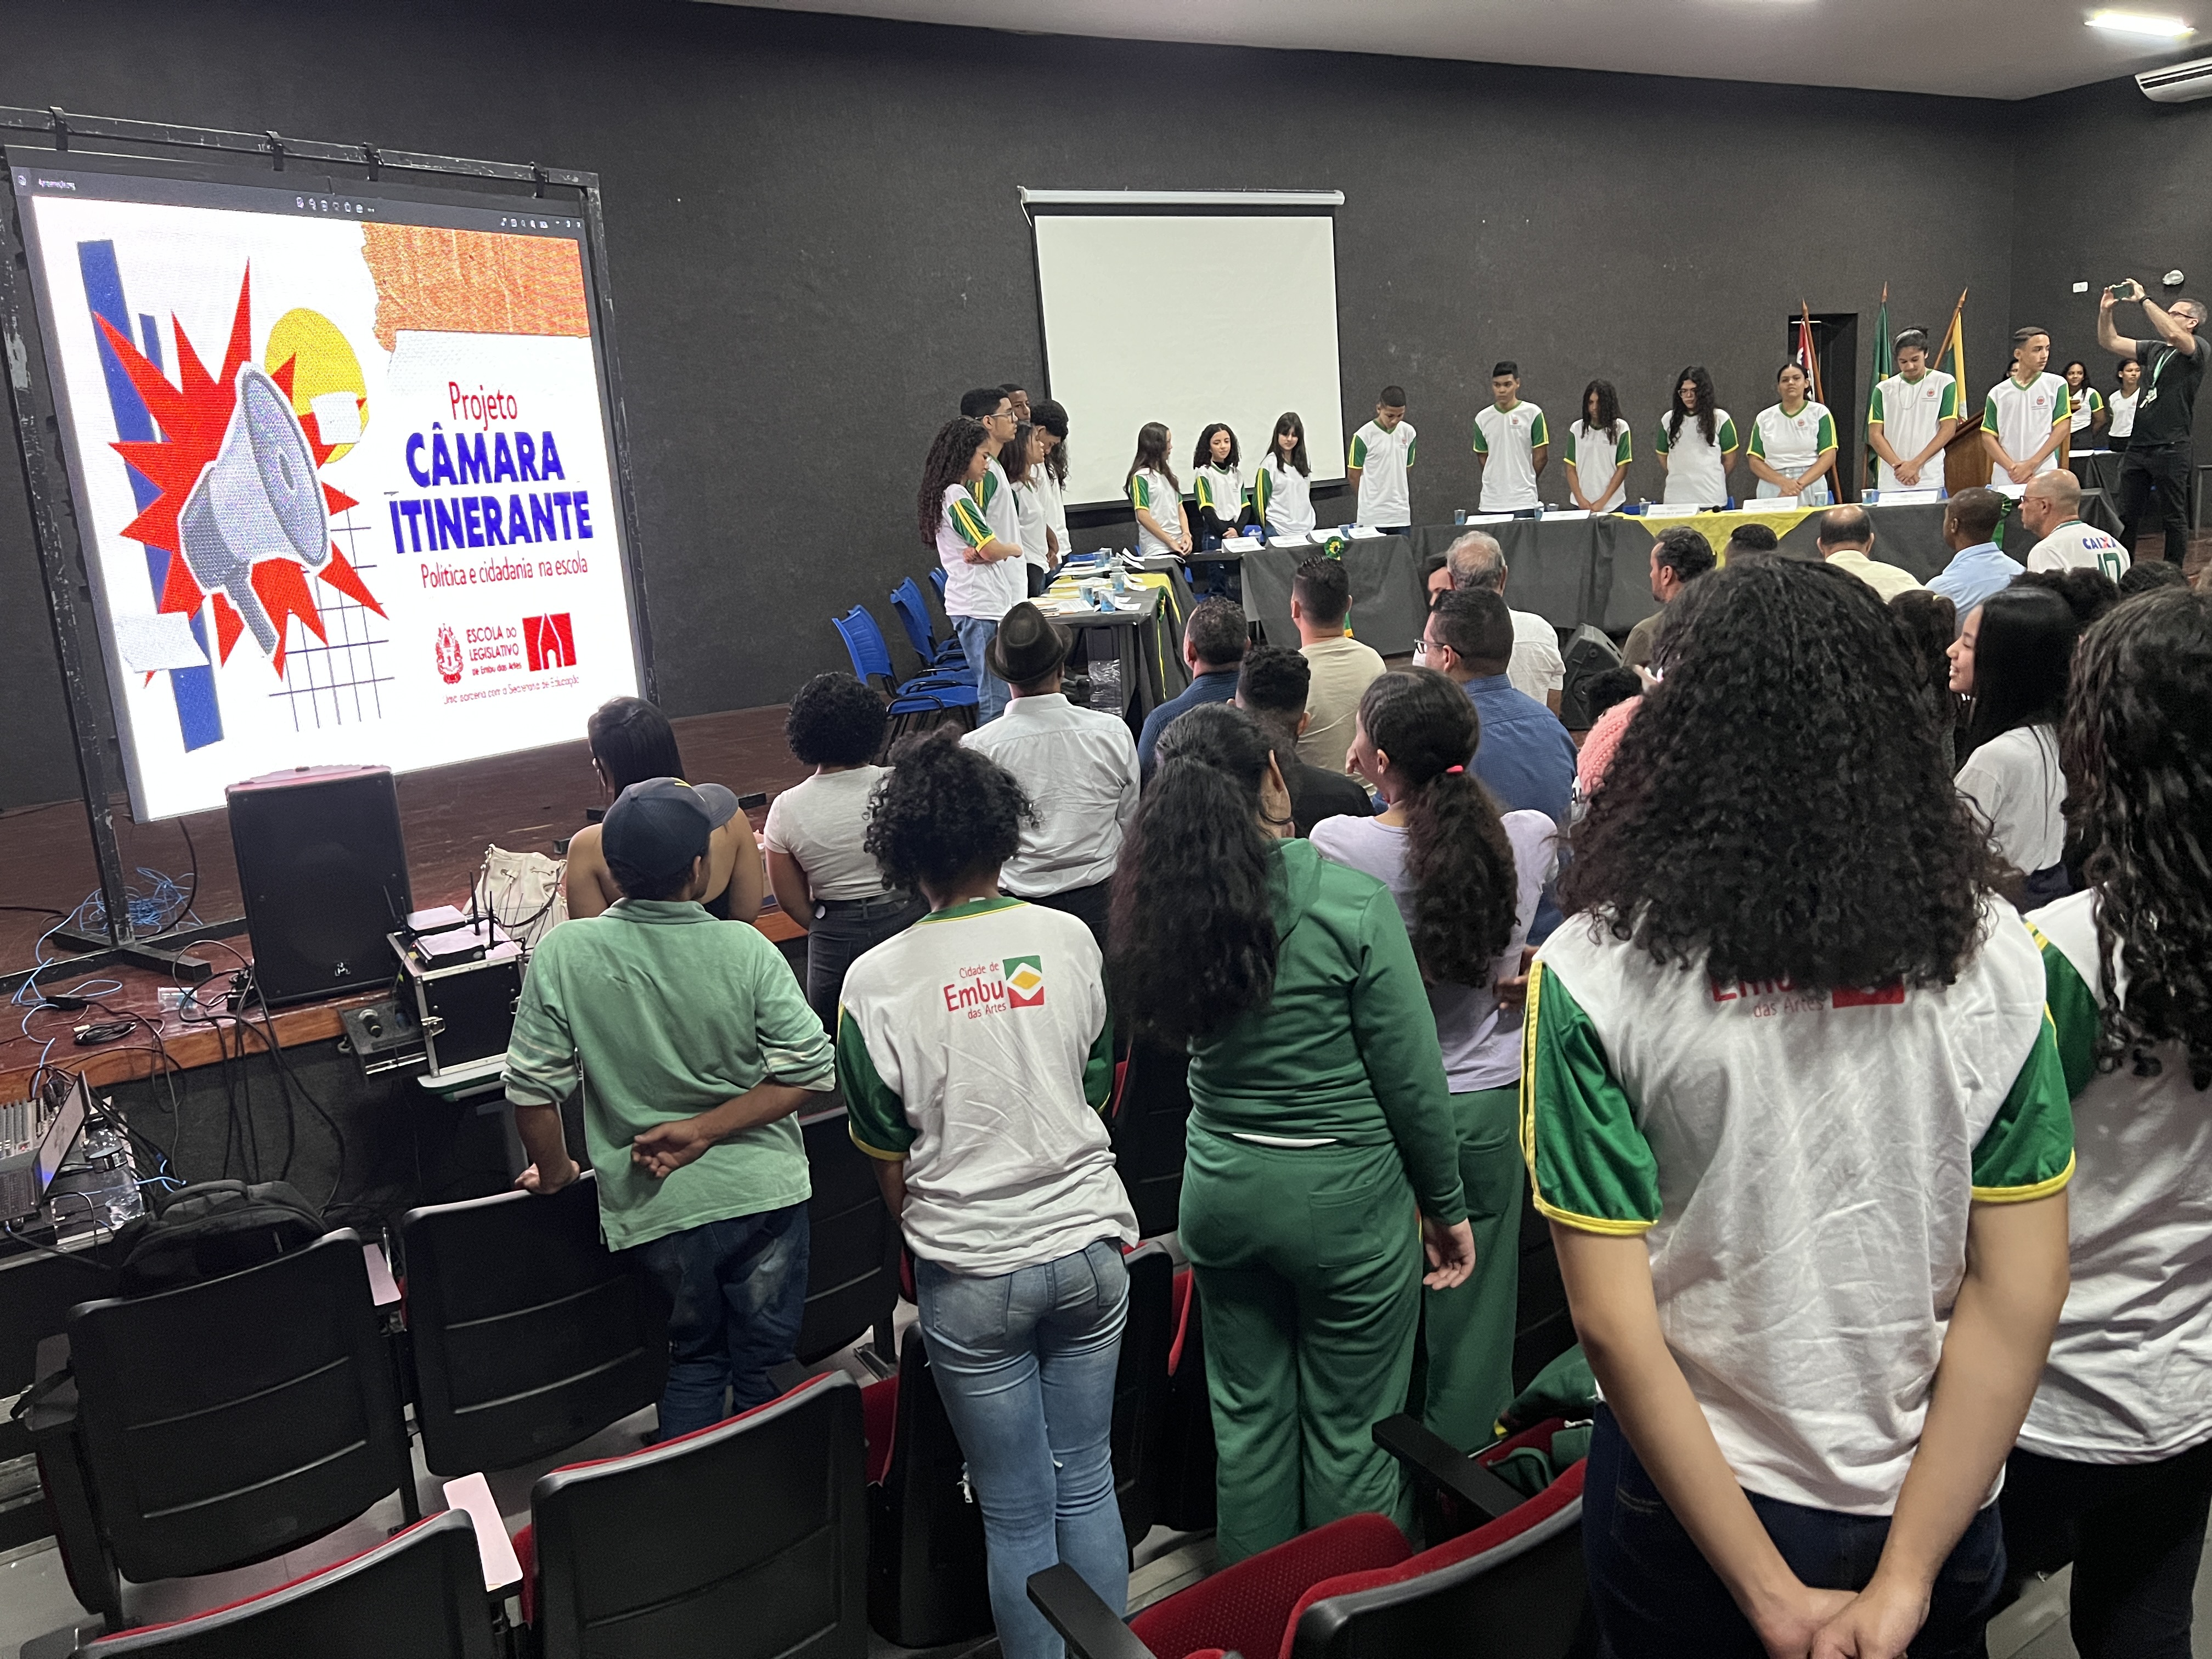 Projeto Câmara Itinerante realiza 1ª sessão da Câmara Mirim na Escola Municipal Valdelice Prass